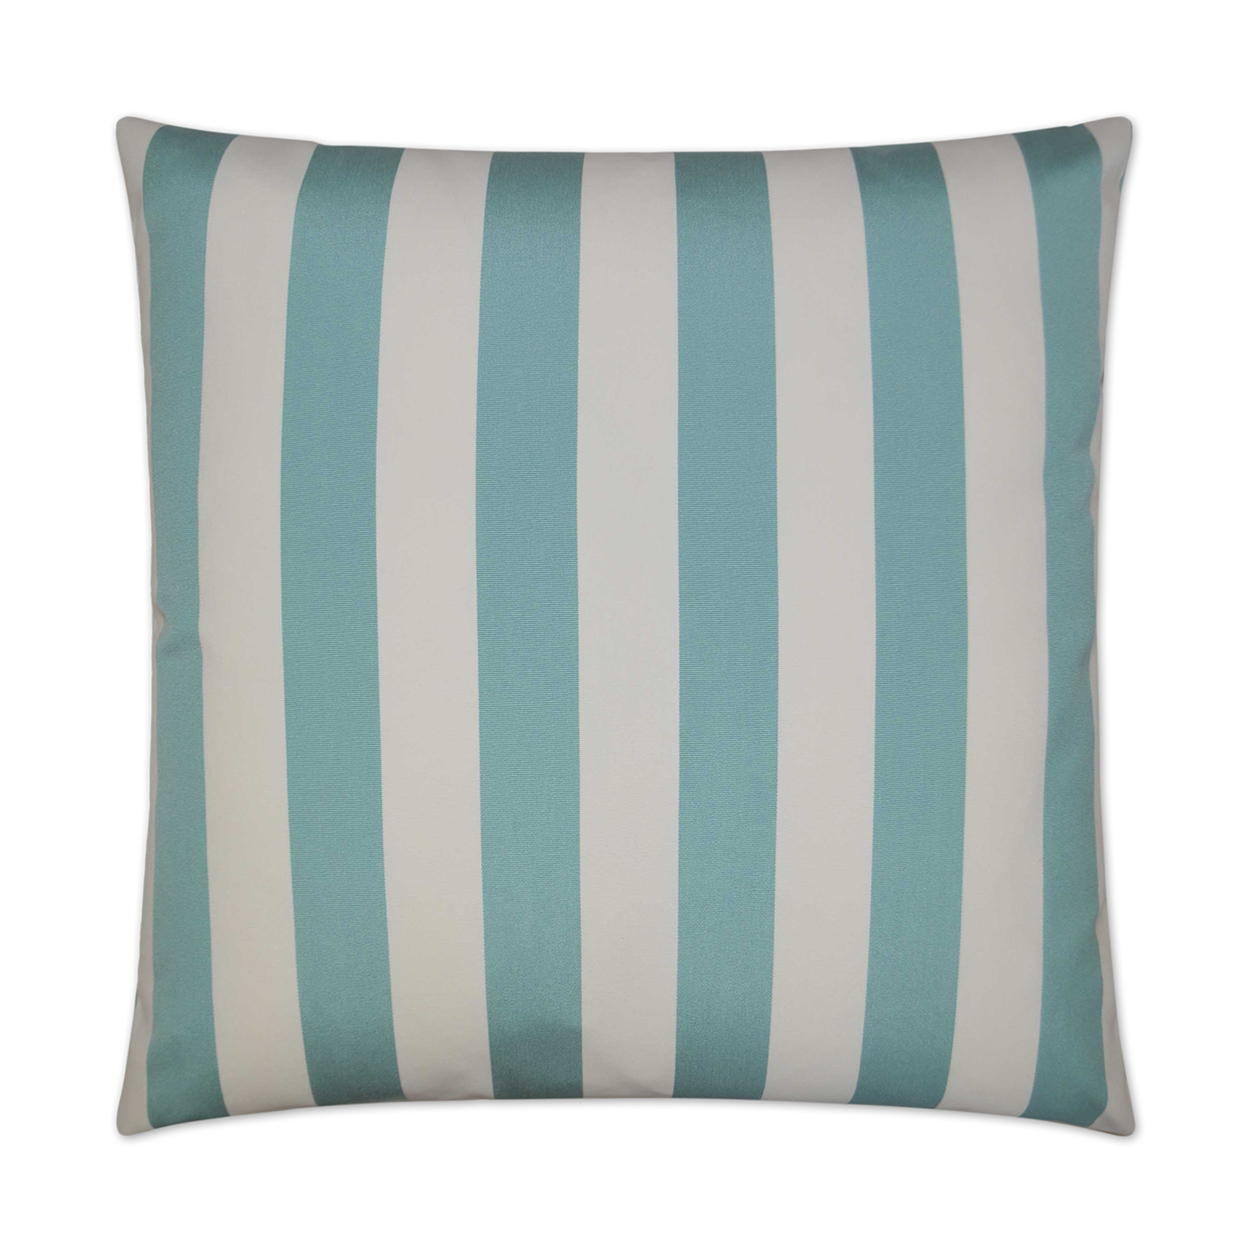 Cafe Stripe Aqua Outdoor Pillow 22x22